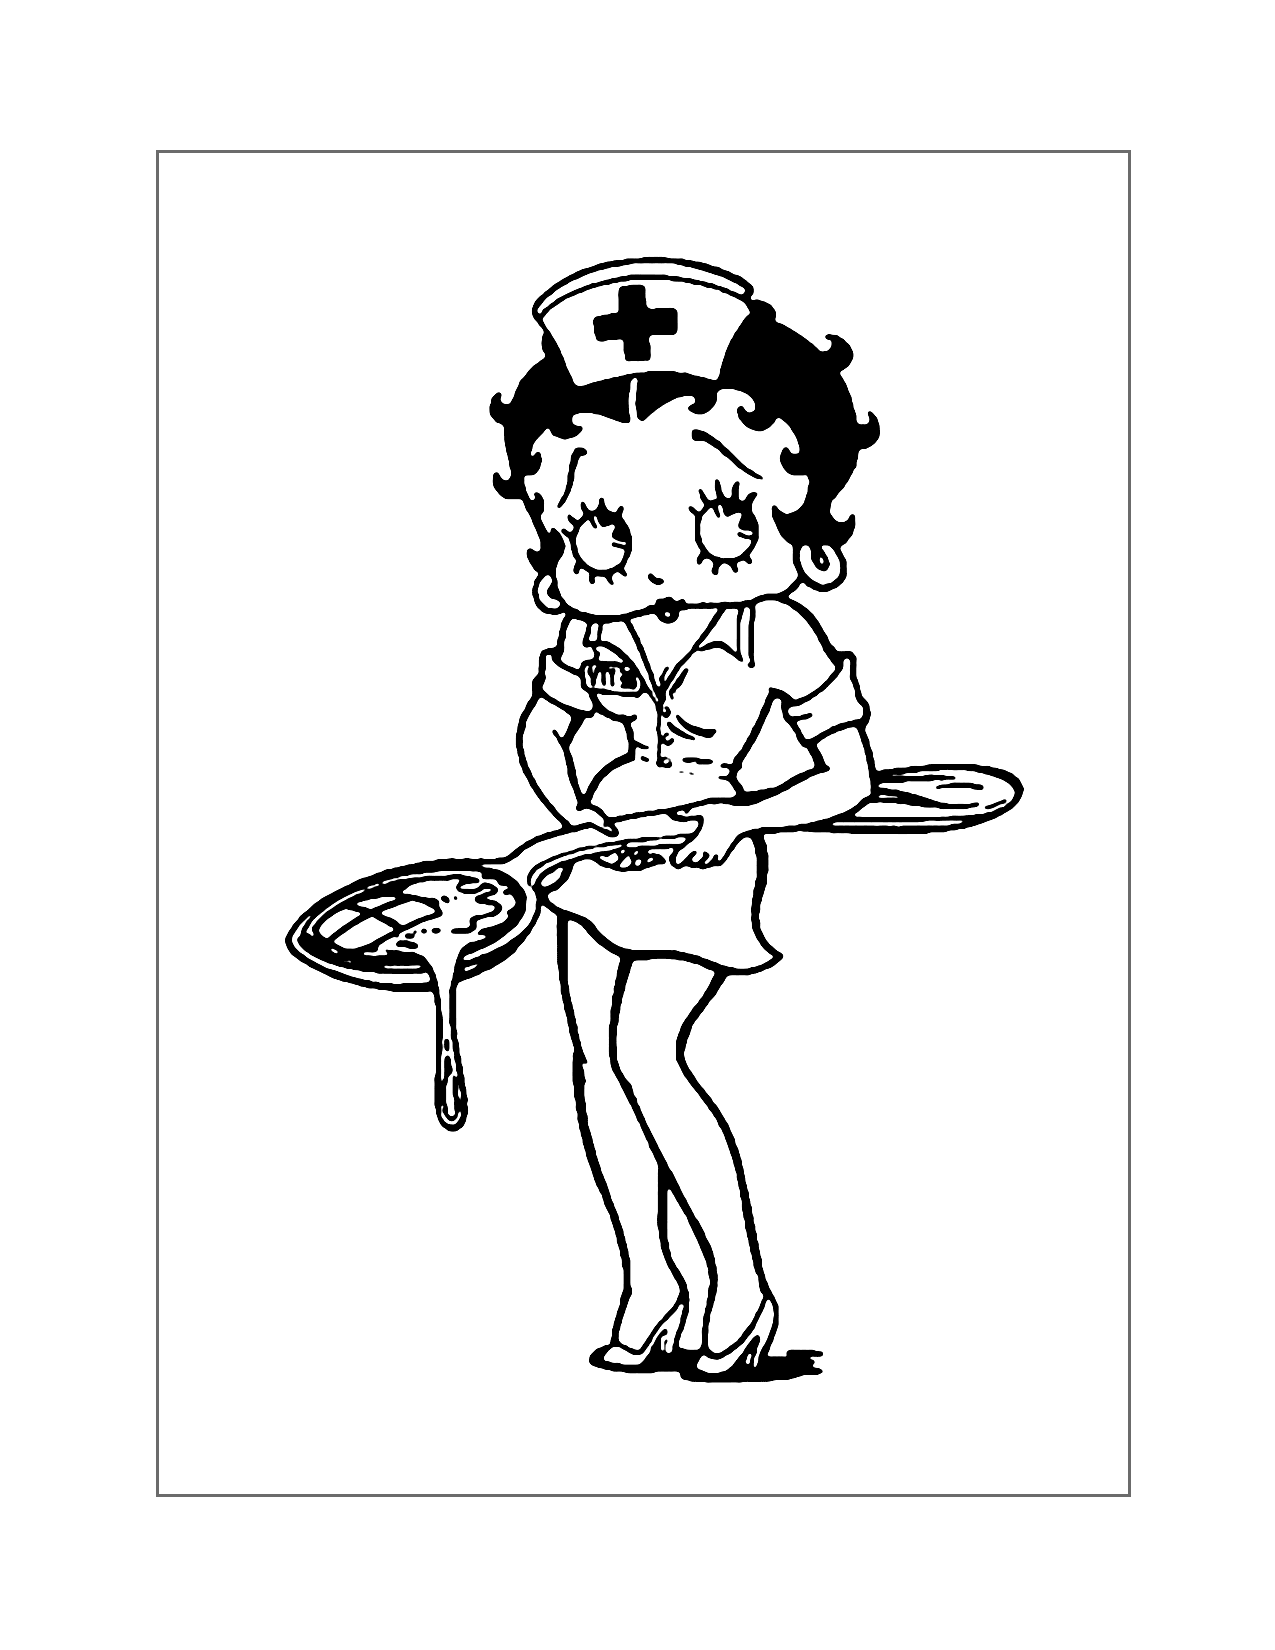 Nurse Betty Boop Coloring Page